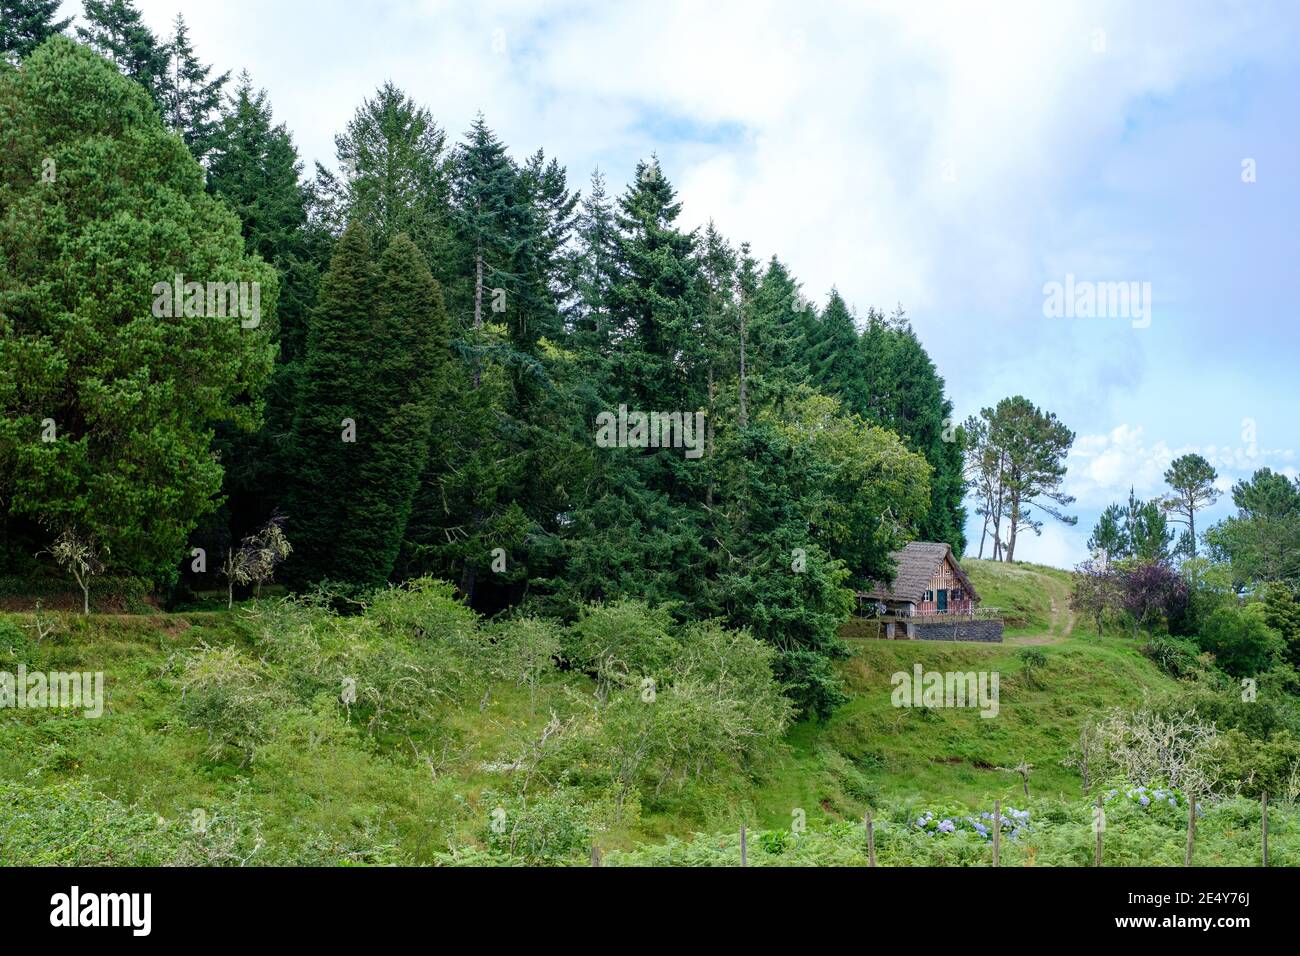 Typisches madeira Inselhaus in einer dreieckigen Form im Inmitten von riesigen Bäumen aus den wilden Wäldern Stockfoto